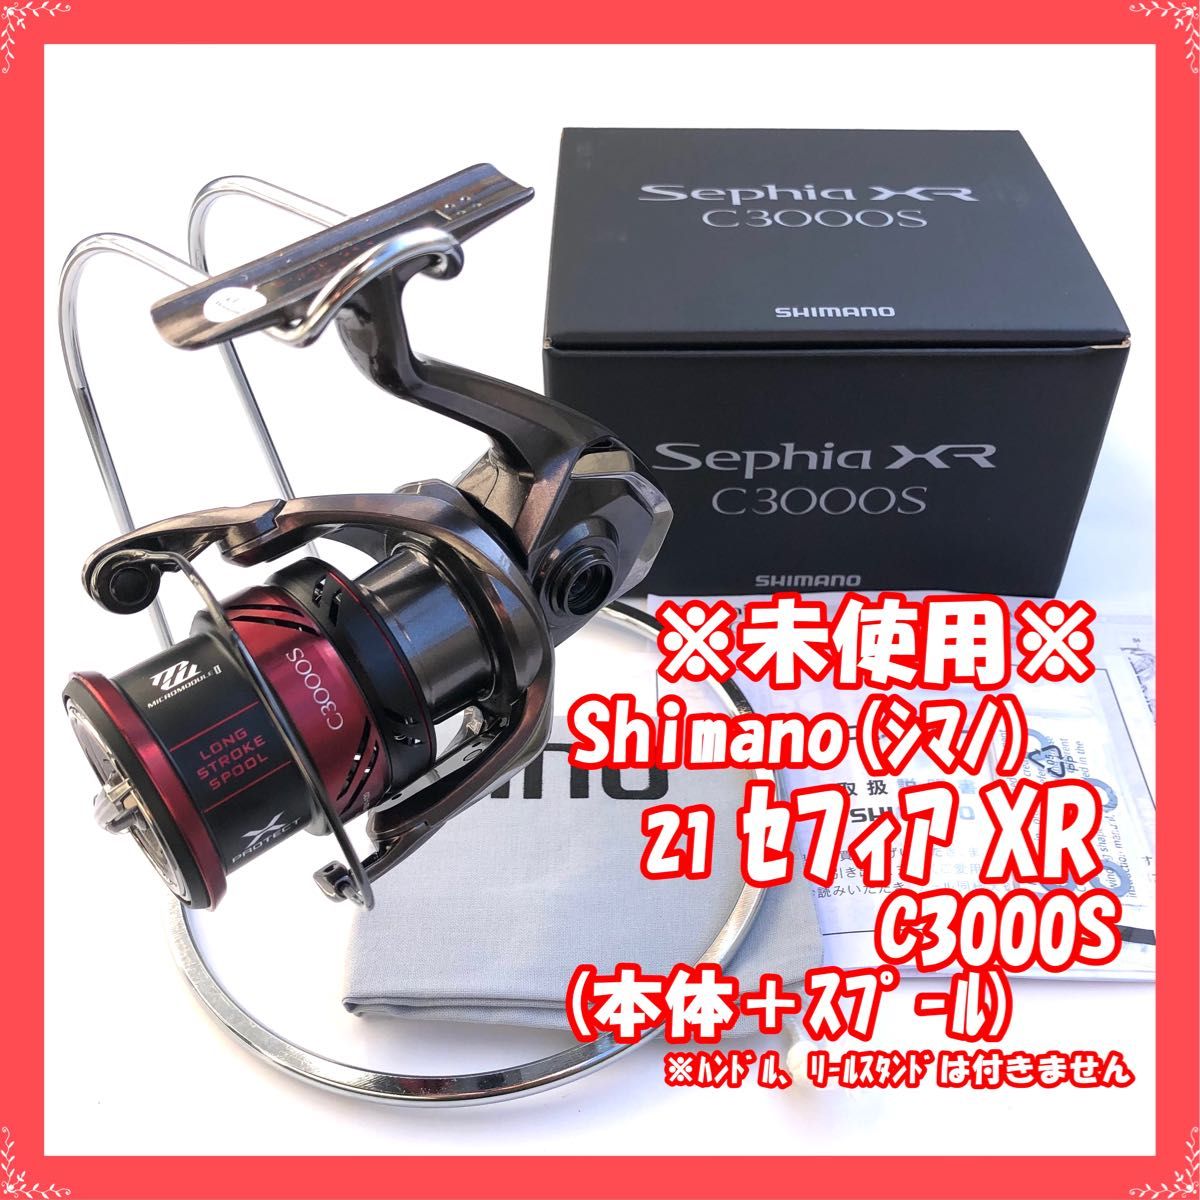 シマノ(SHIMANO) スピニングリール 21 セフィア XR C3000SHG エギング